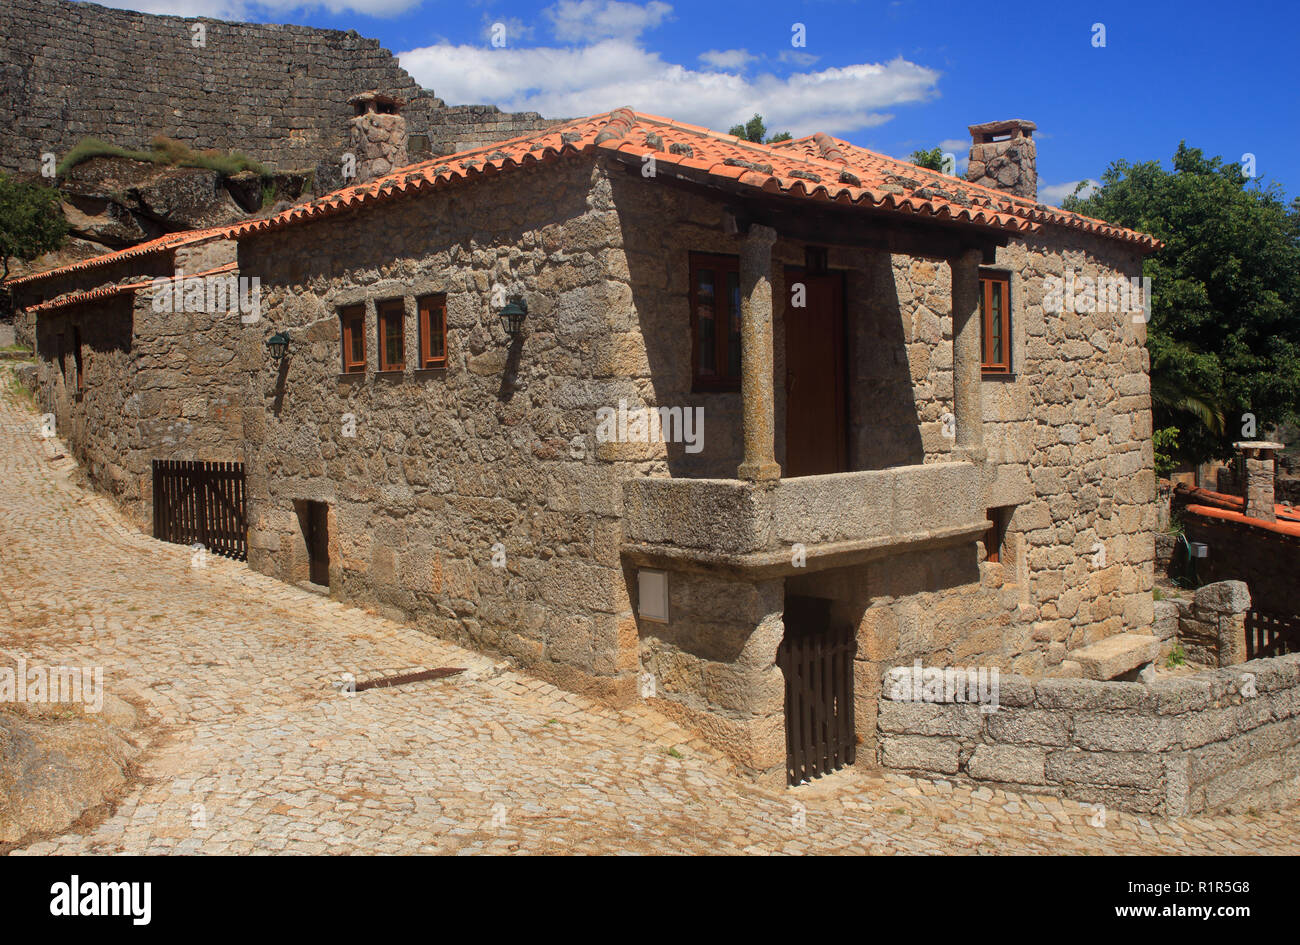 Le Portugal, district de Guarda, Beira Alta. Sortelha, village de montagne historique, construit à l'intérieur des murs médiévaux. Banque D'Images